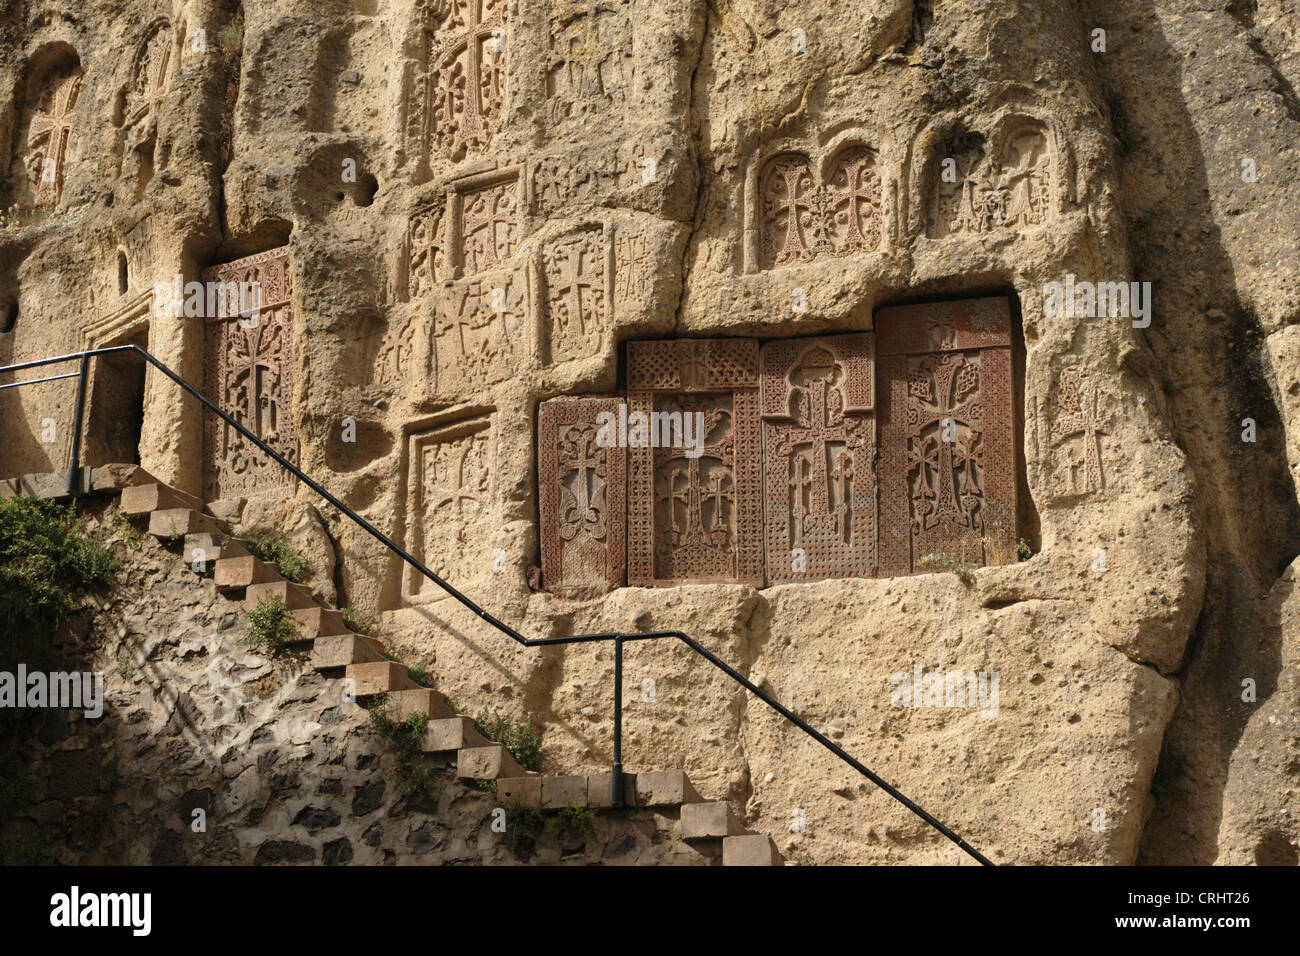 Chatschkars in Geghard monastery, Armenia Stock Photo